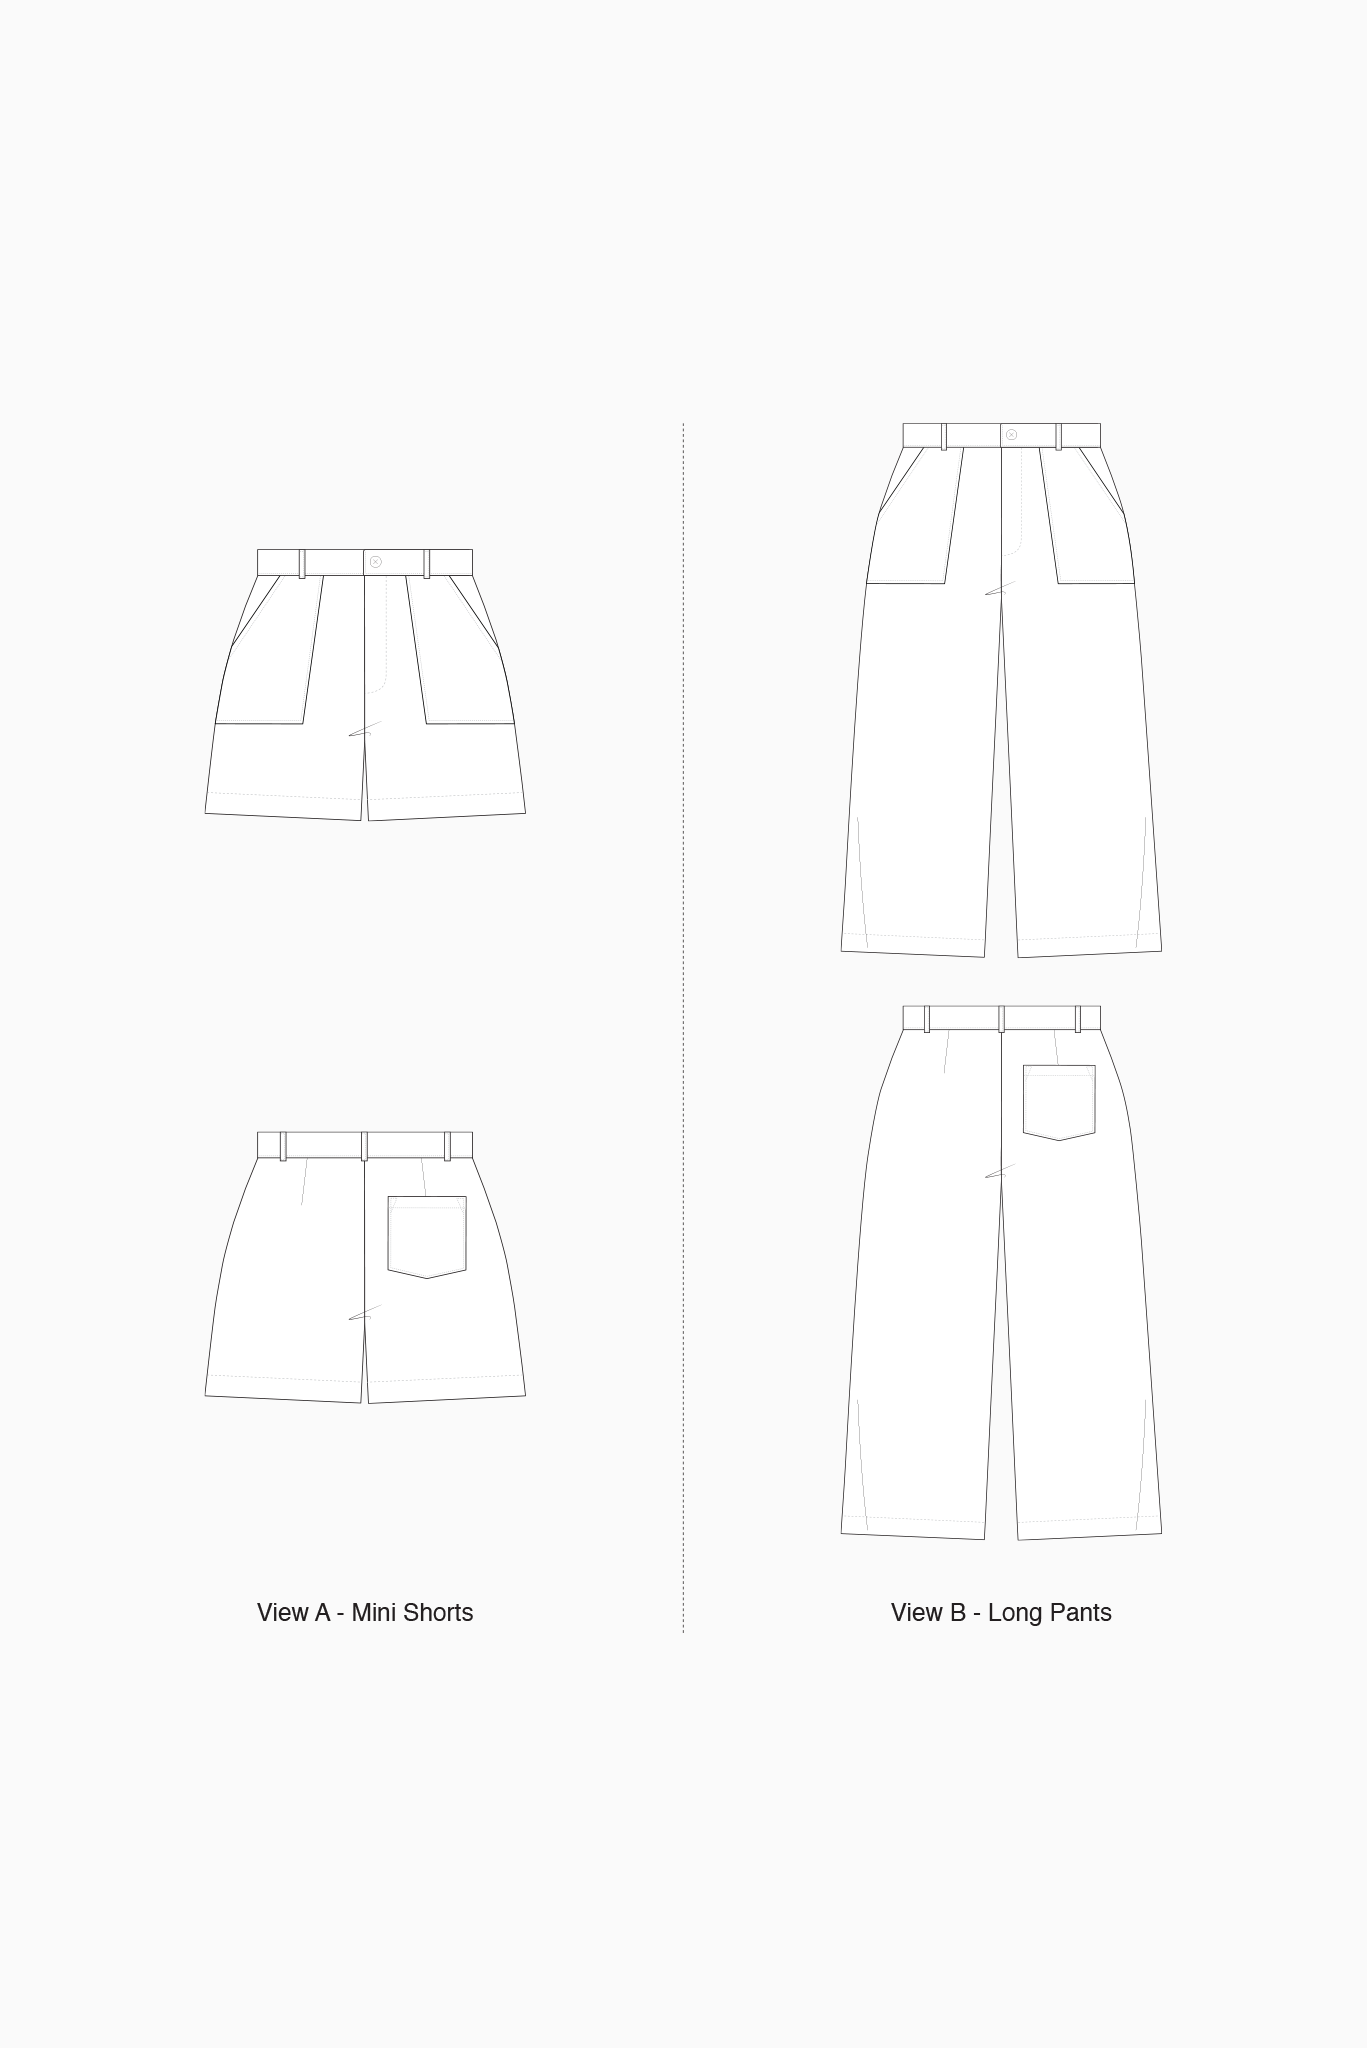 Bottlebrush Shorts Sewing Kit